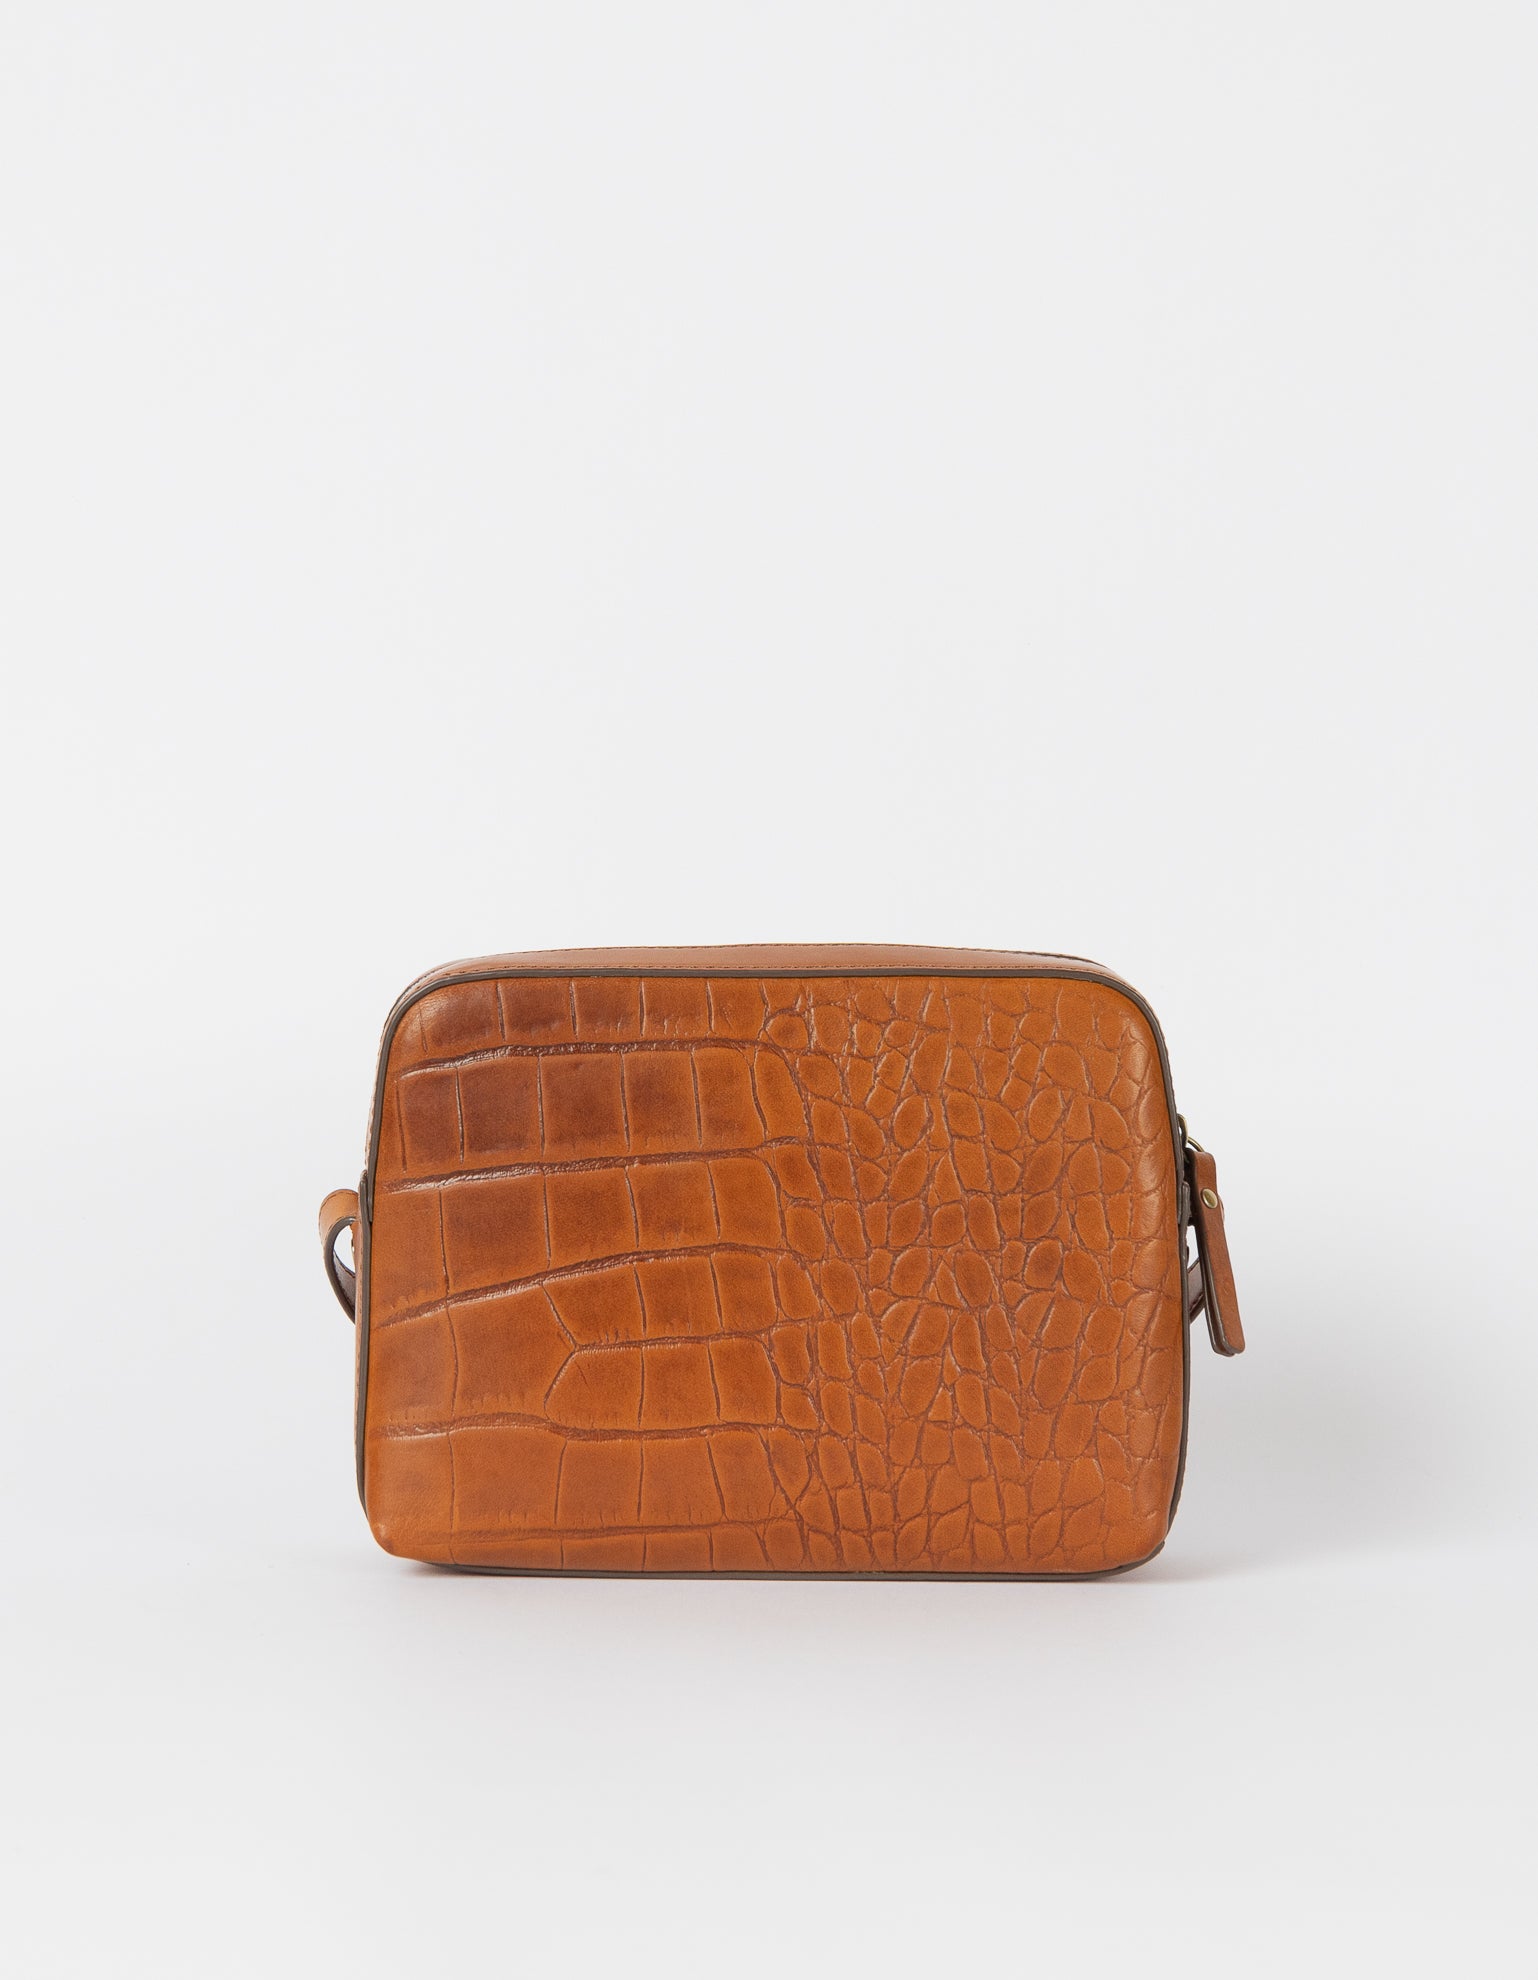 Sue Cognac Classic Croco Leather Handbag back image.